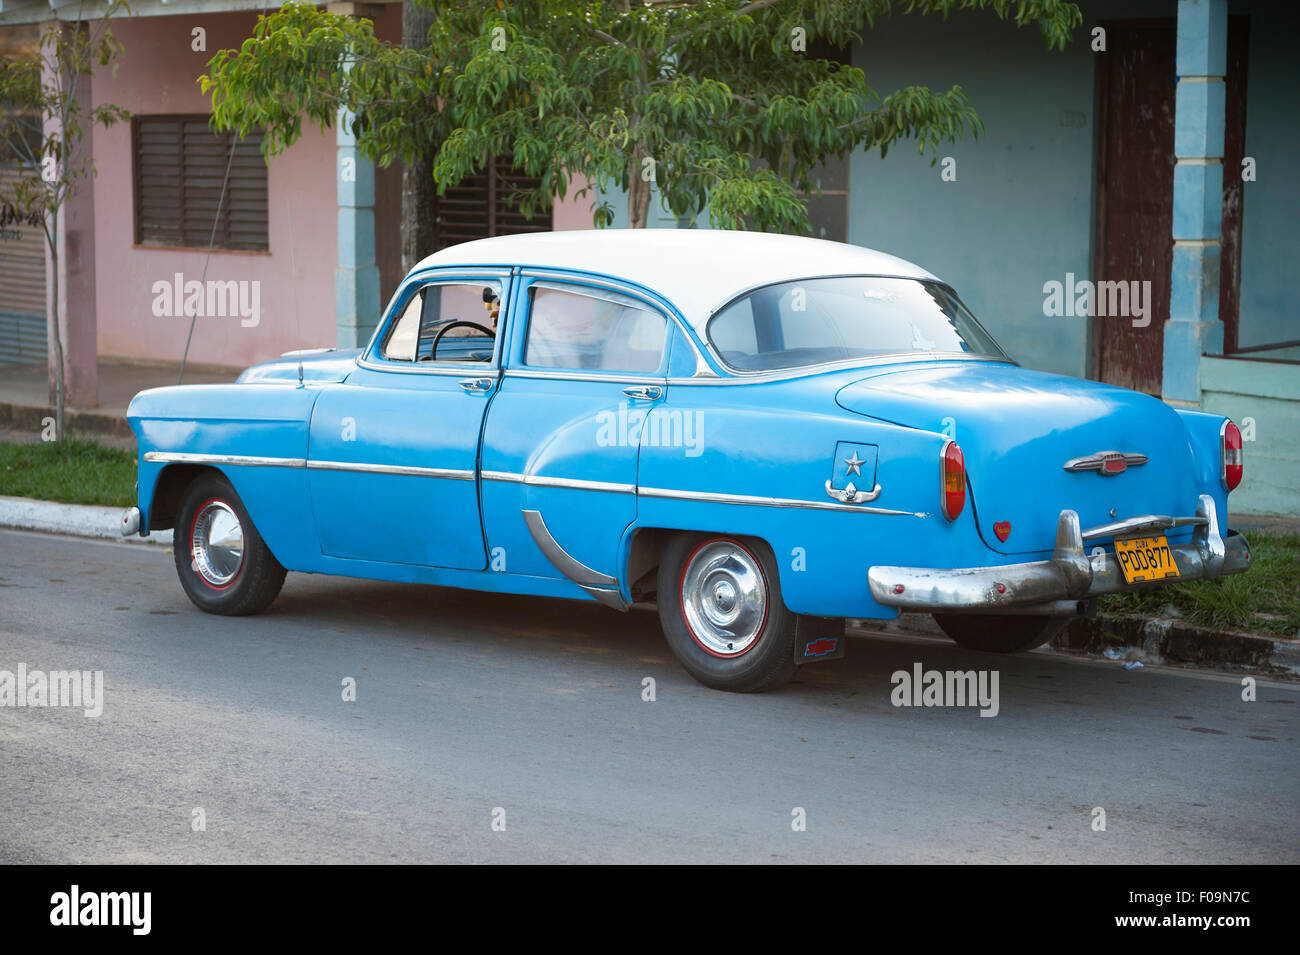 VINALES, Kuba - 20. Mai 2011: Klassische amerikanische Auto steht vor geparkt traditionelle einfache Wohnarchitektur. Stockfoto